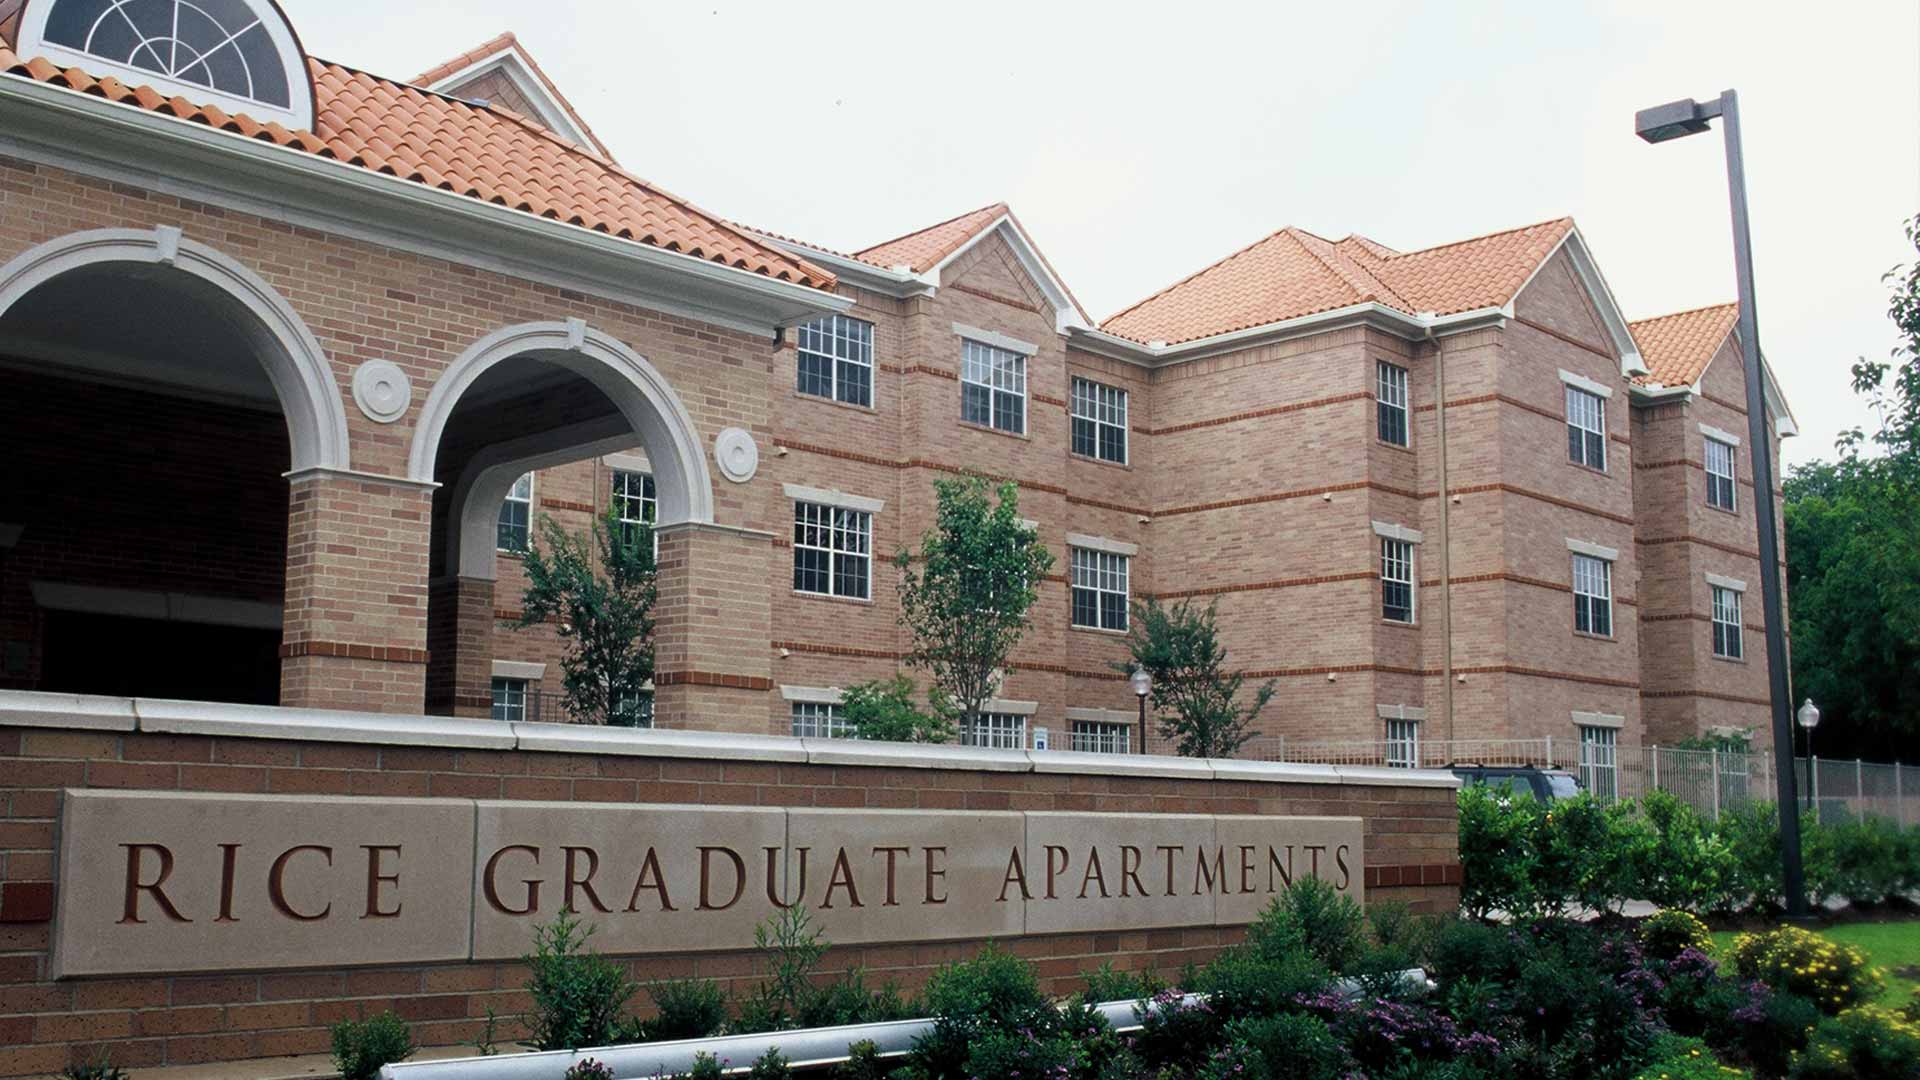 Rice Graduate Apartments